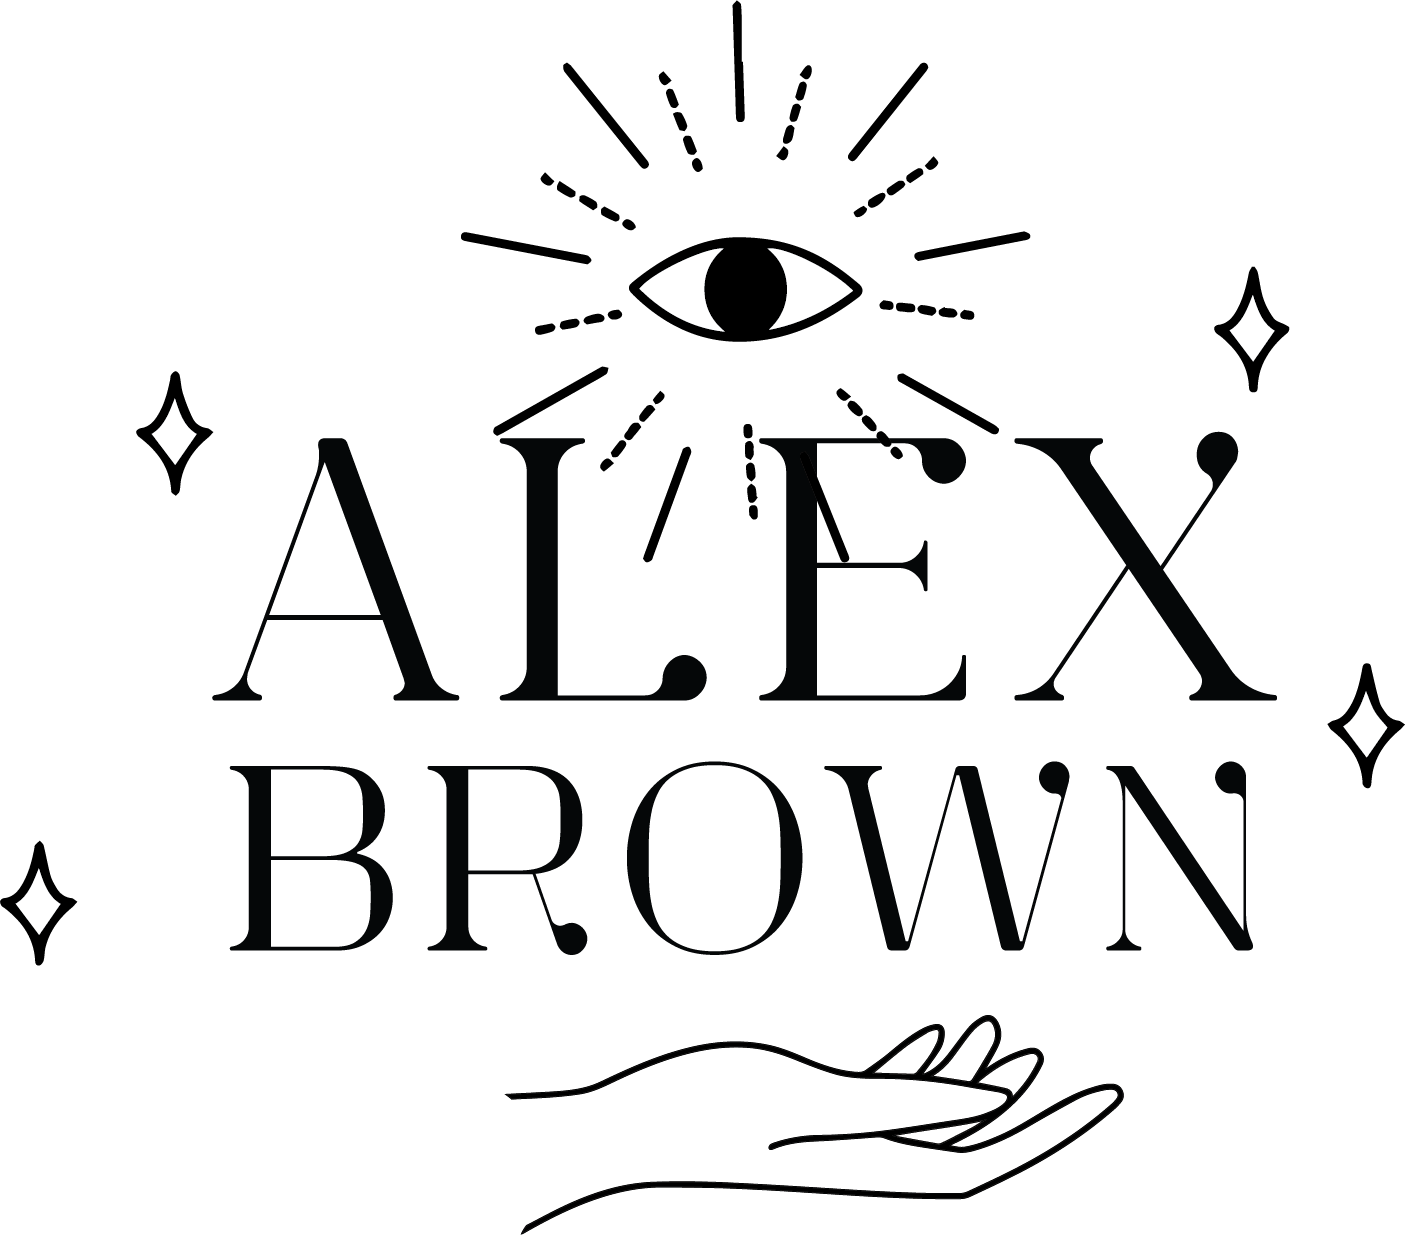 Alex Brown